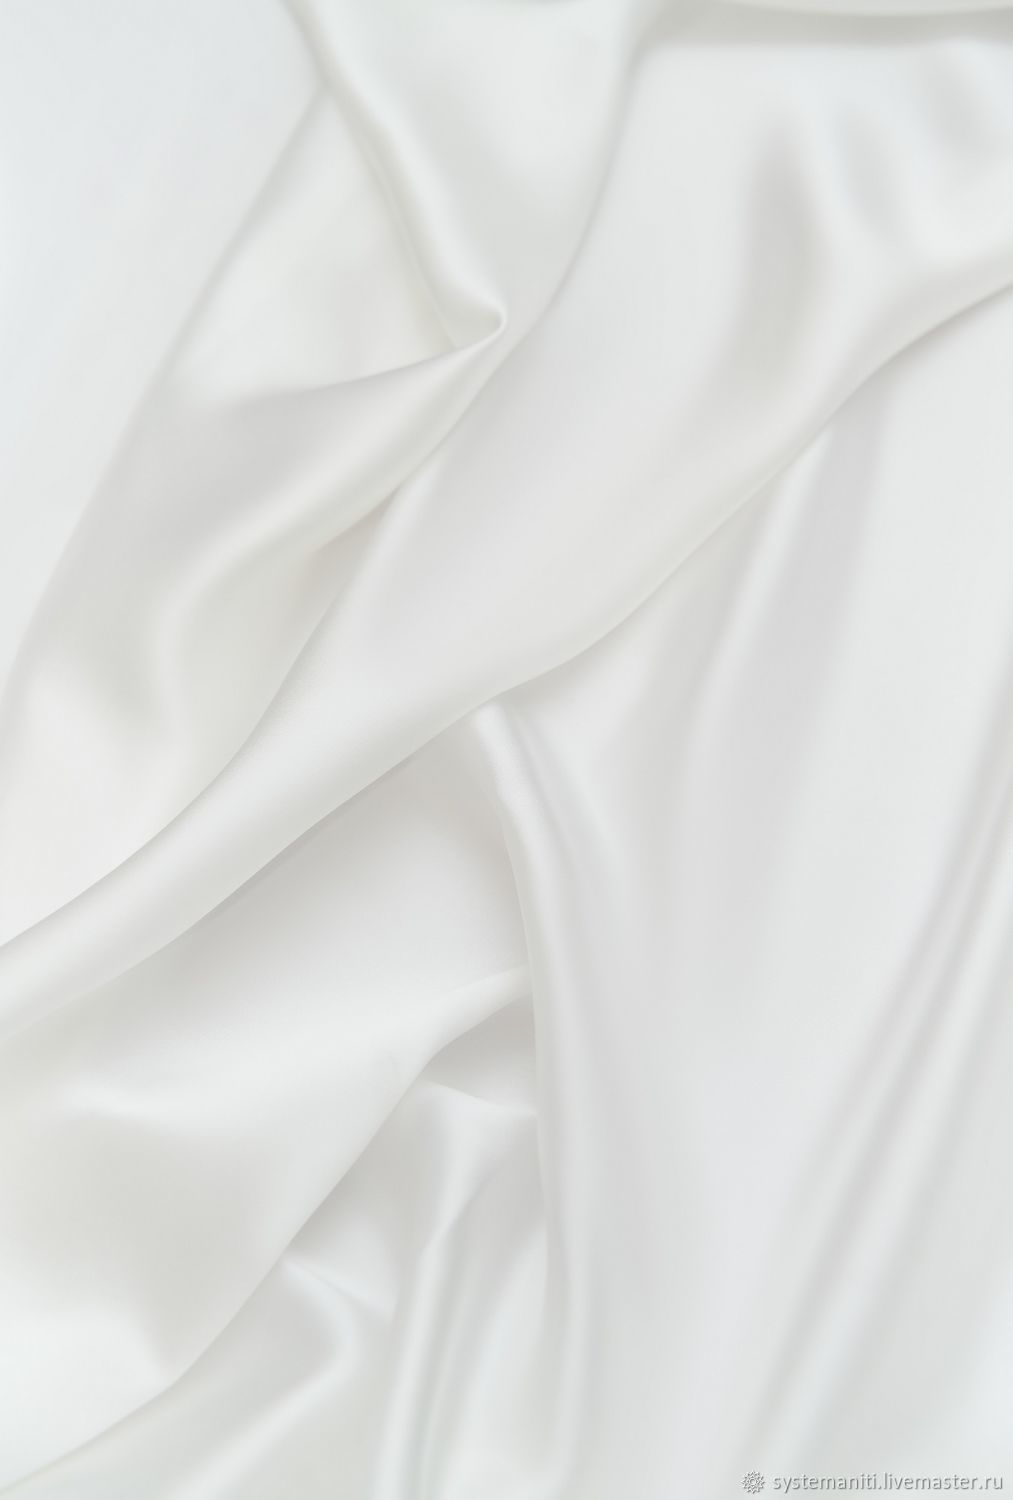 Шёлк натуральный атласный 19мм Белый в наличии, Ткани, Москва,  Фото №1